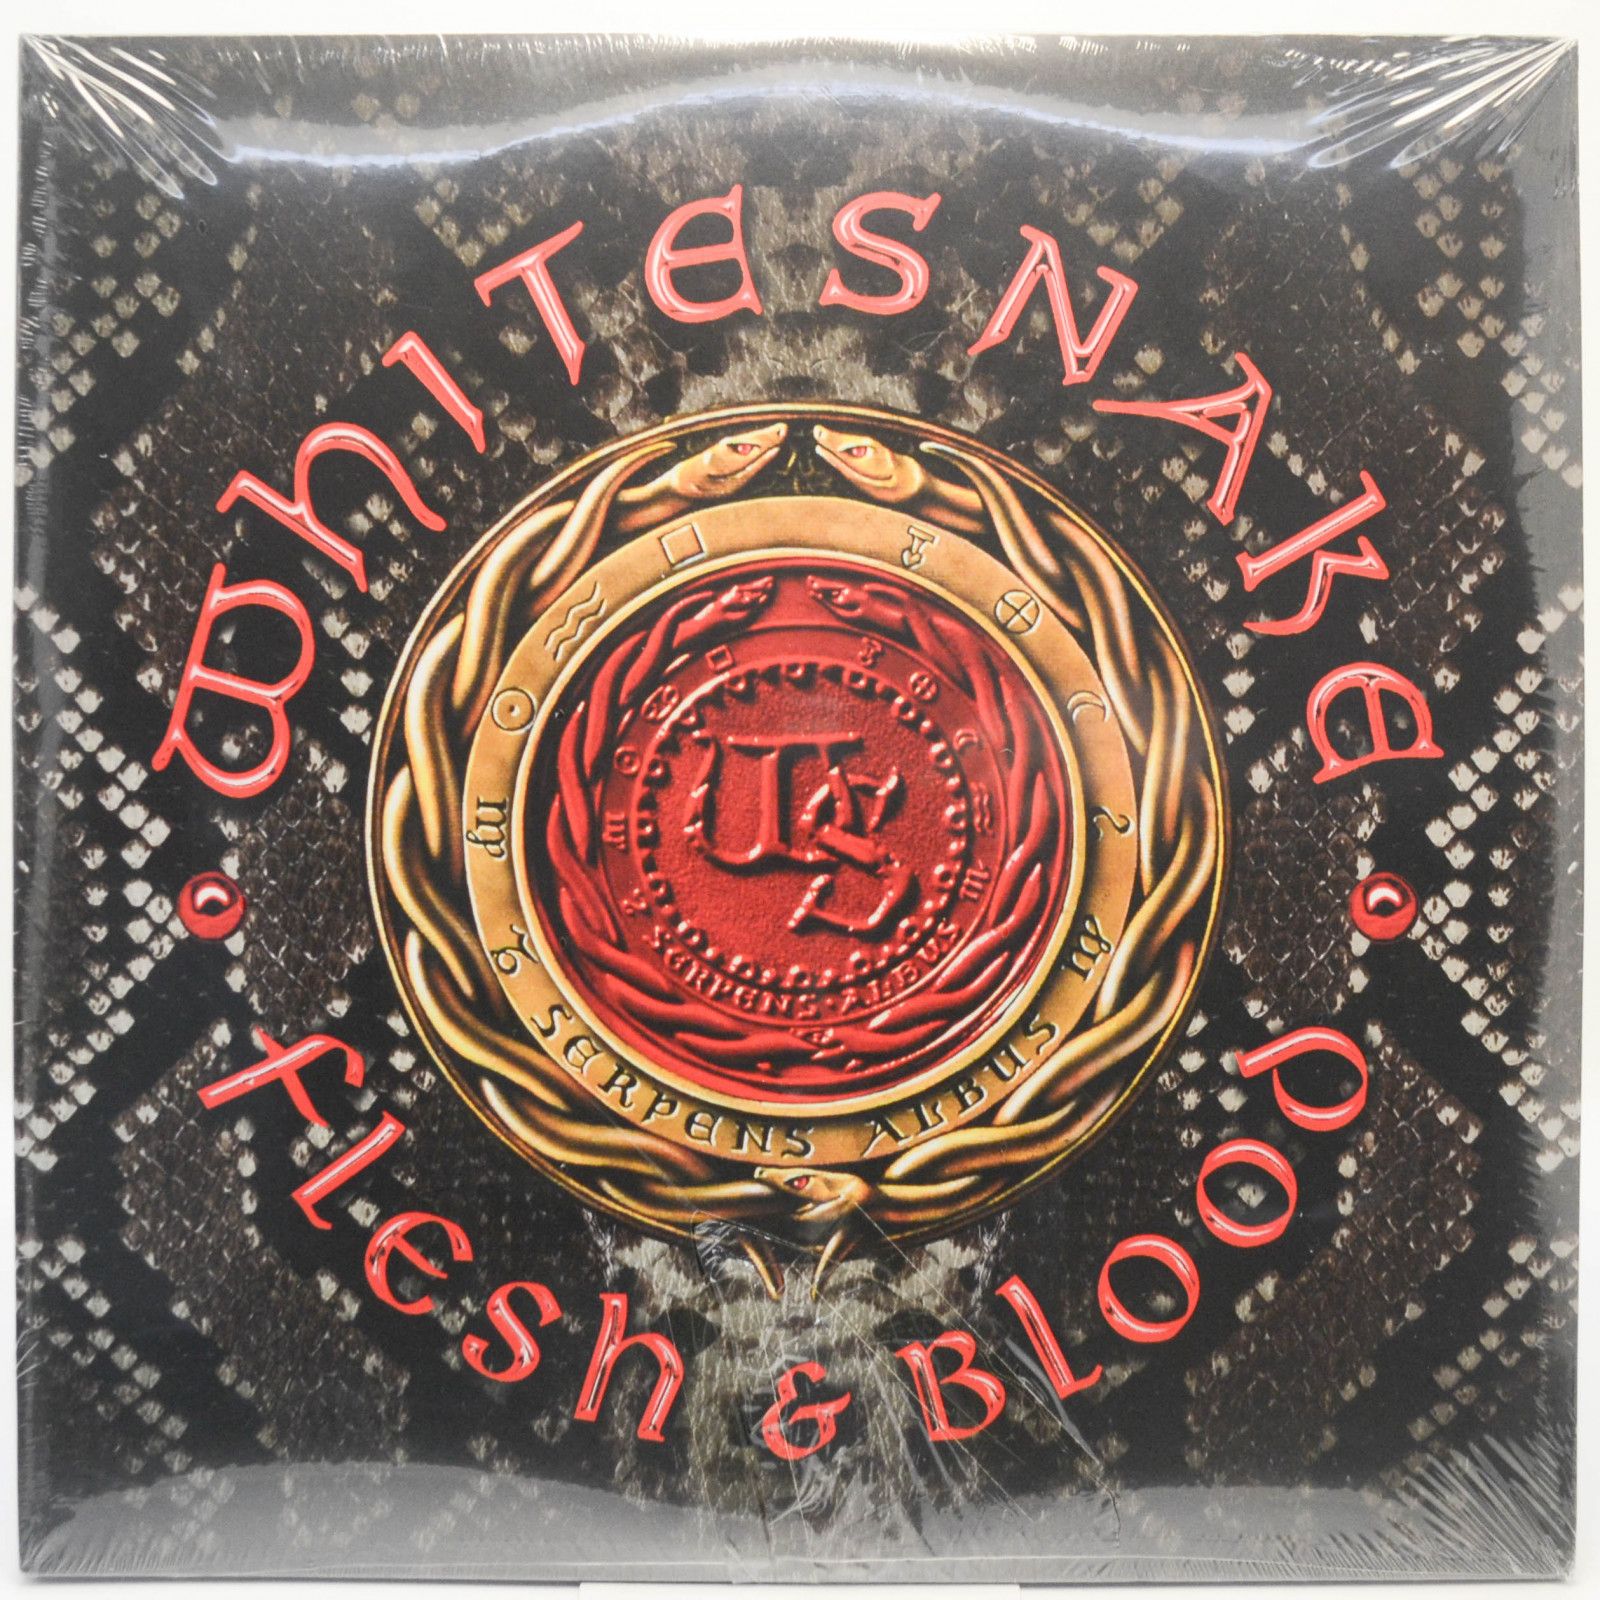 Whitesnake — Flesh & Blood (2LP, USA), 2019